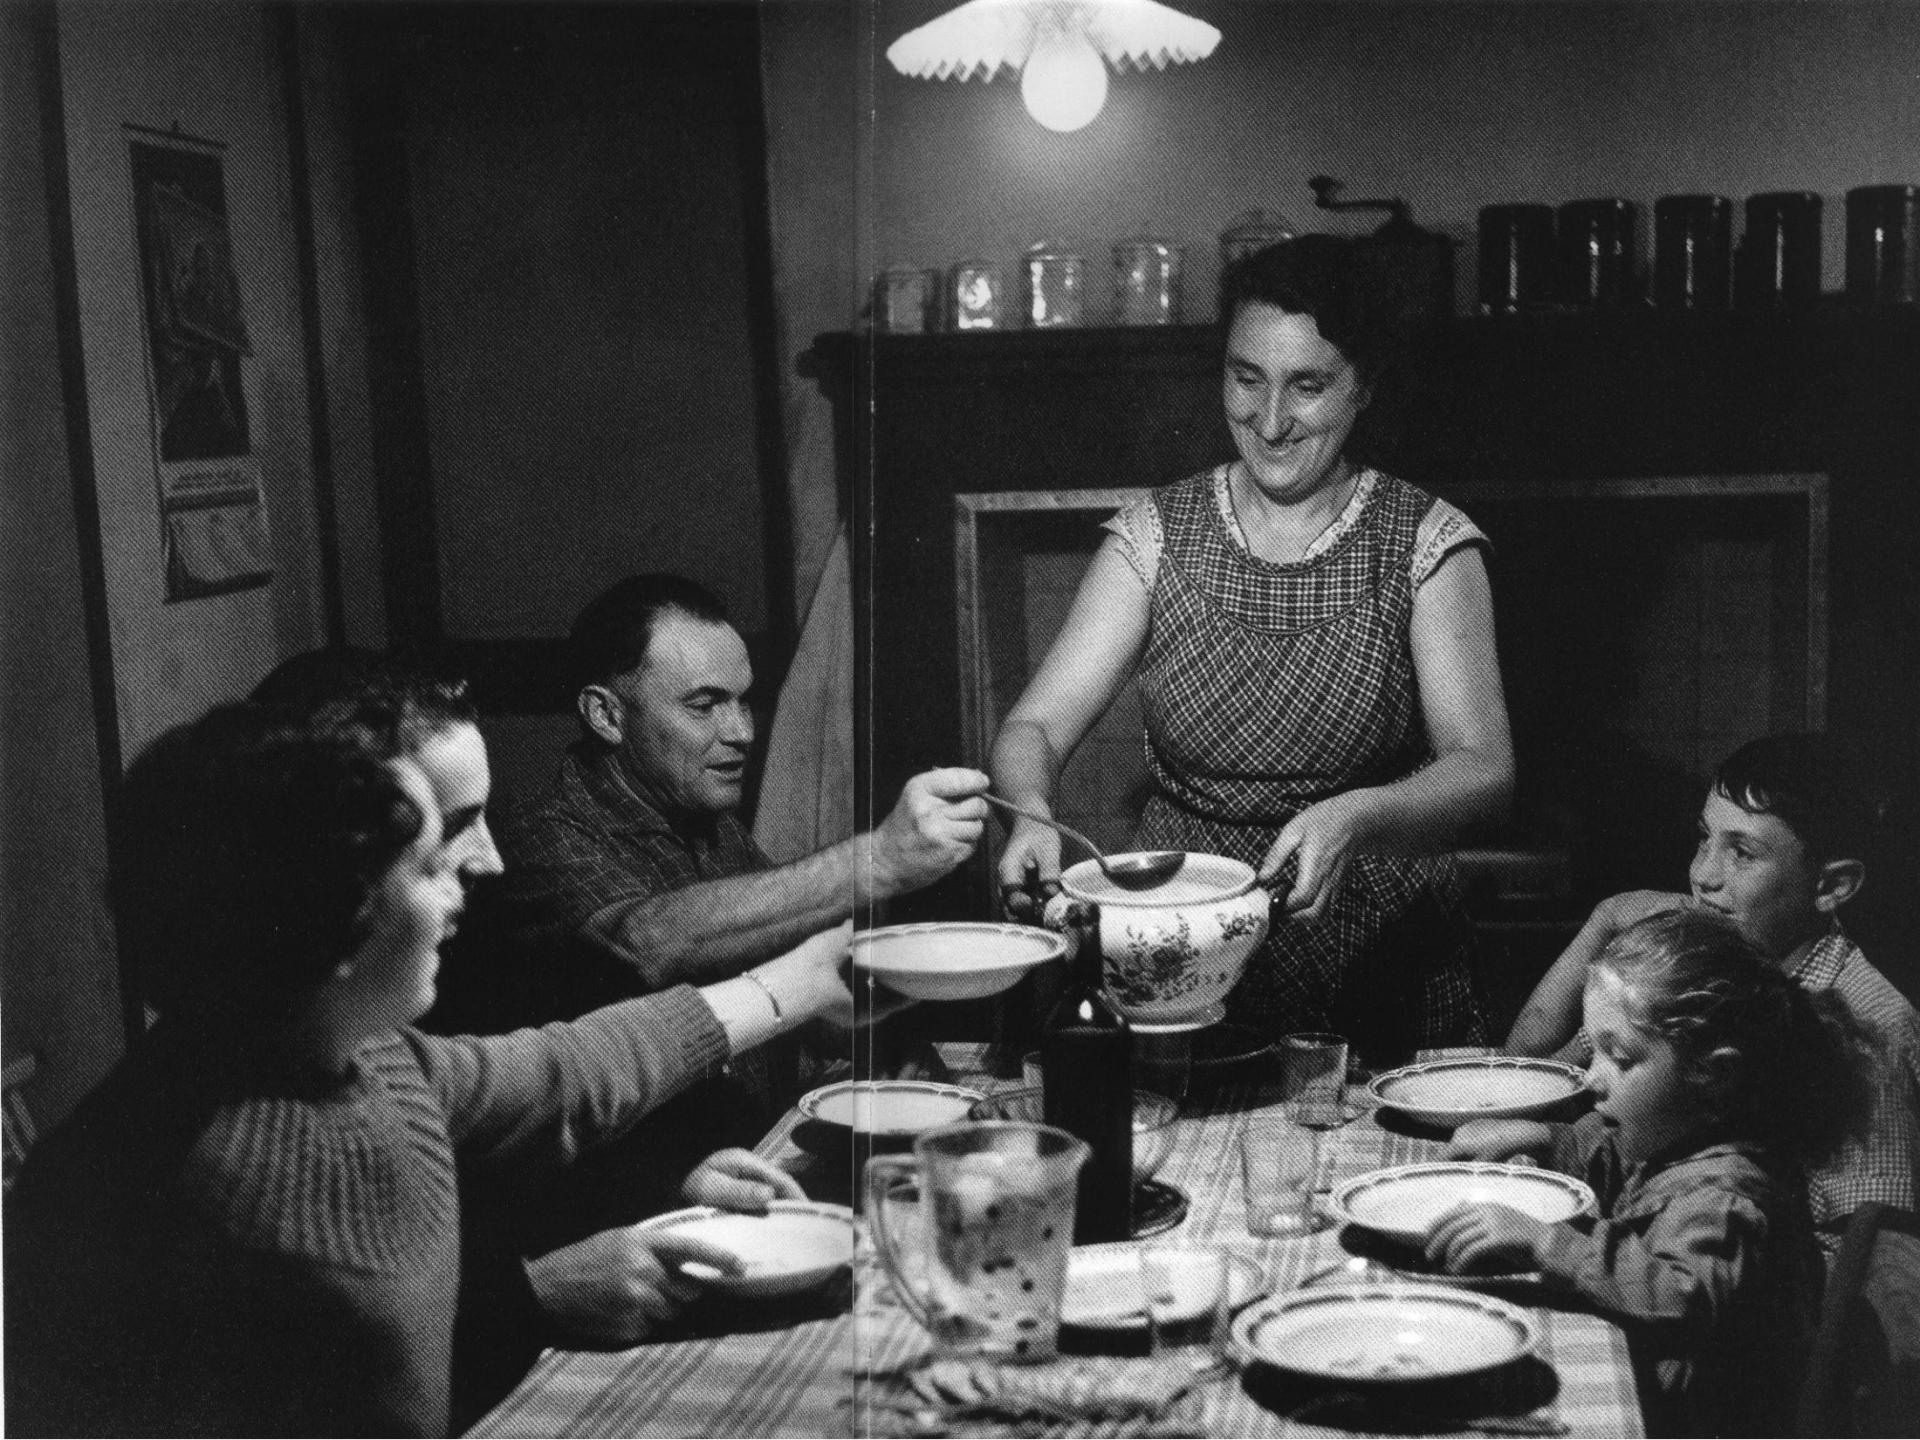 La soupe chez des fermiers le brillac charente 1957 janine niepce